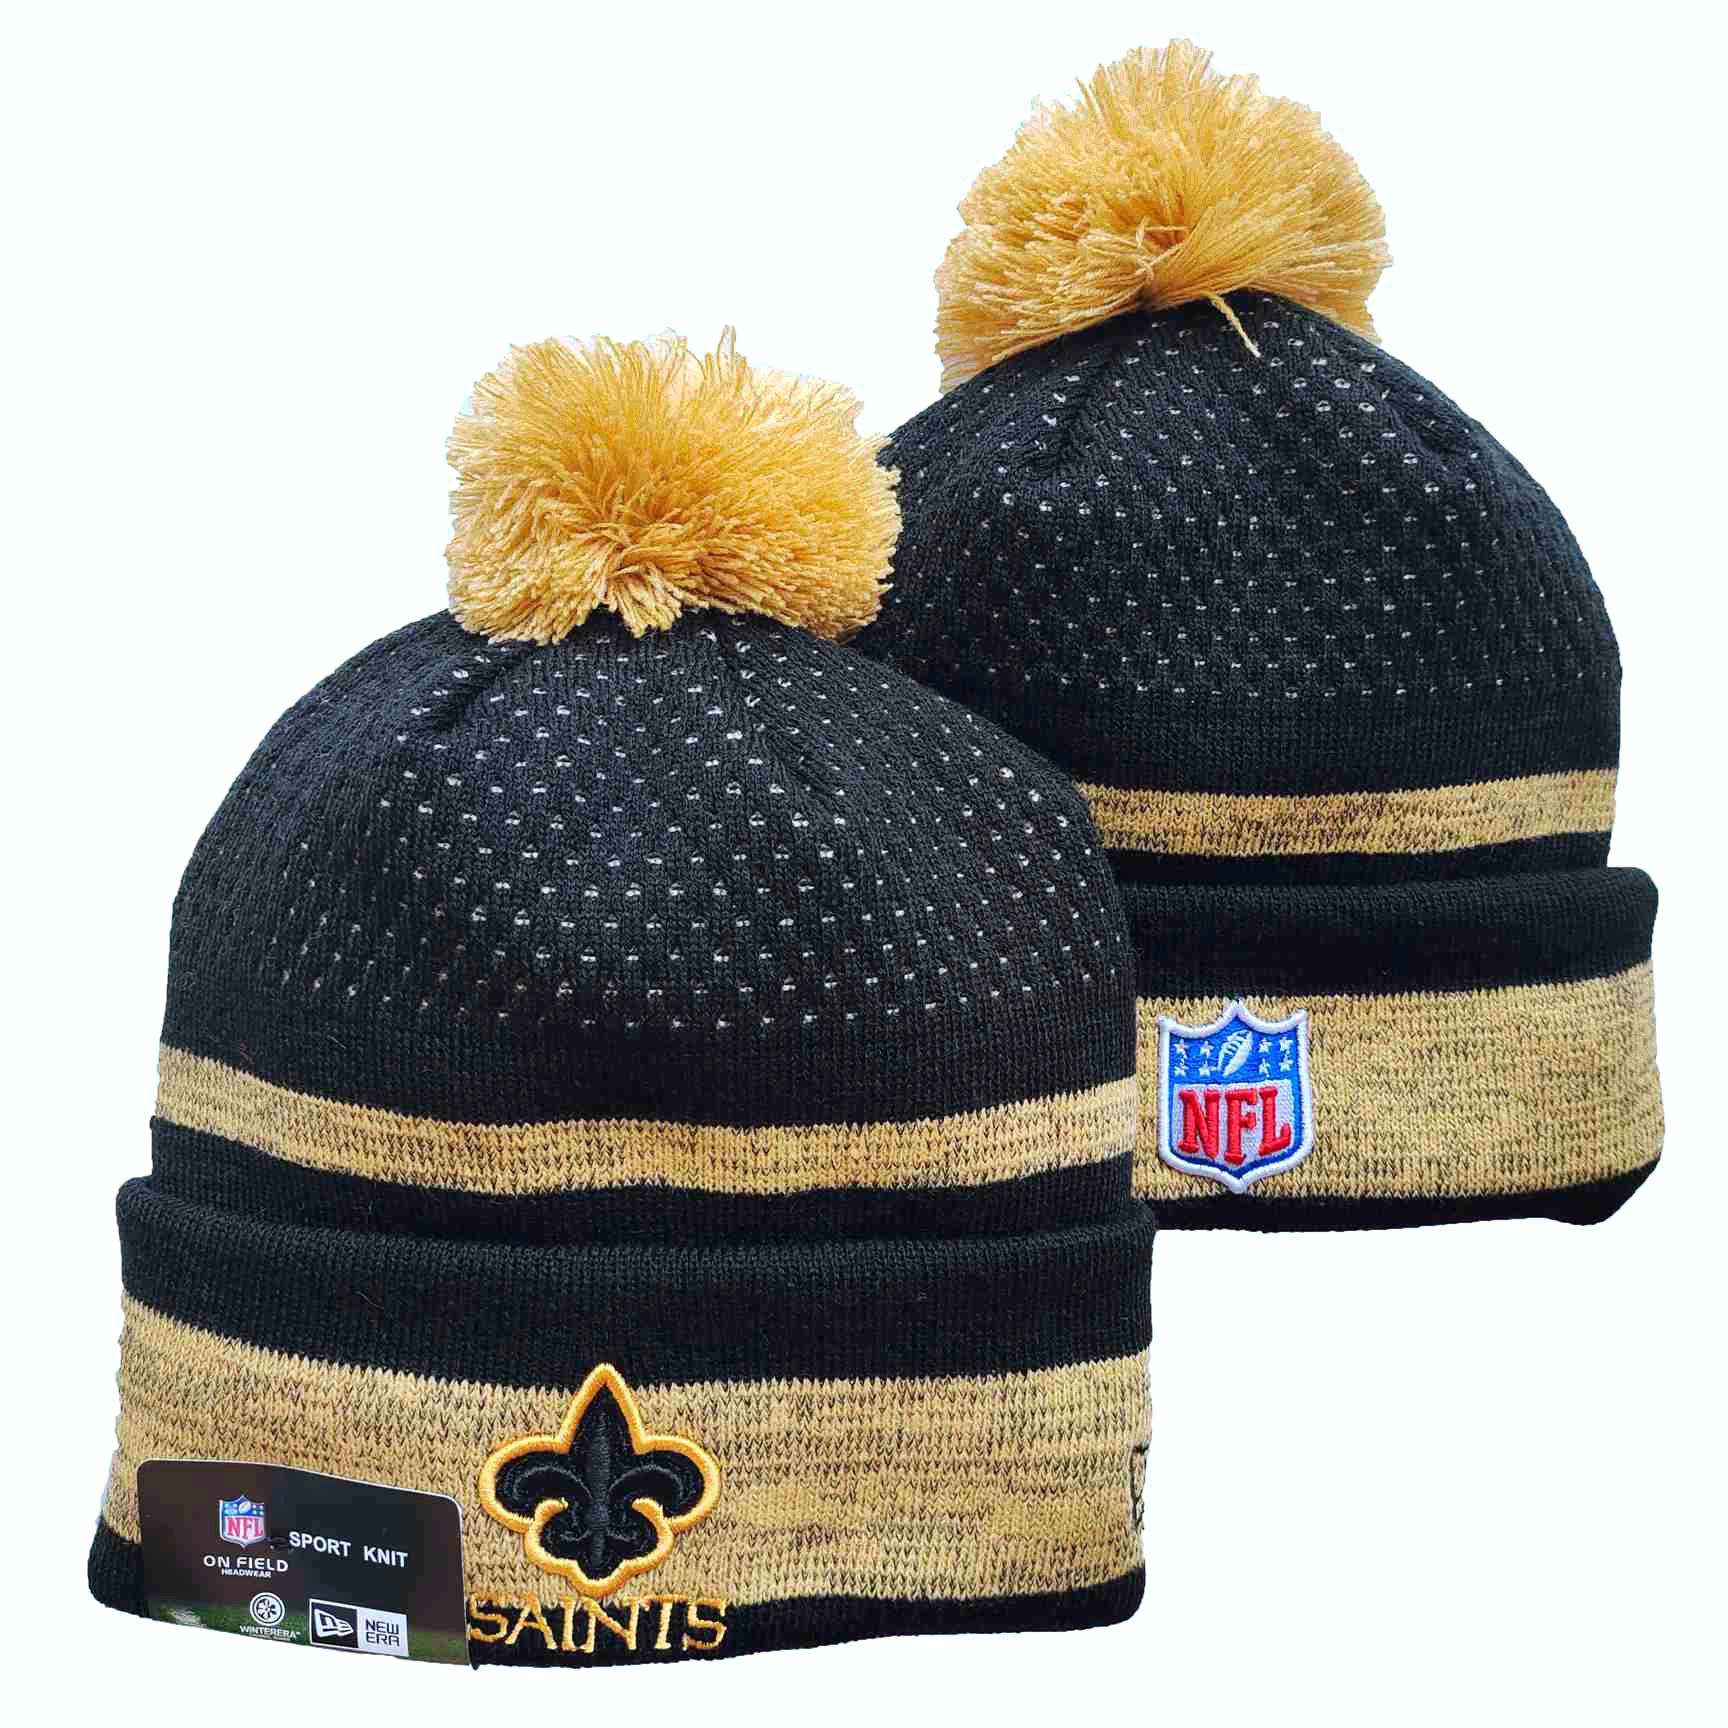 Saints Team Logo Black and Cream Pom Cuffed Knit Hat YD